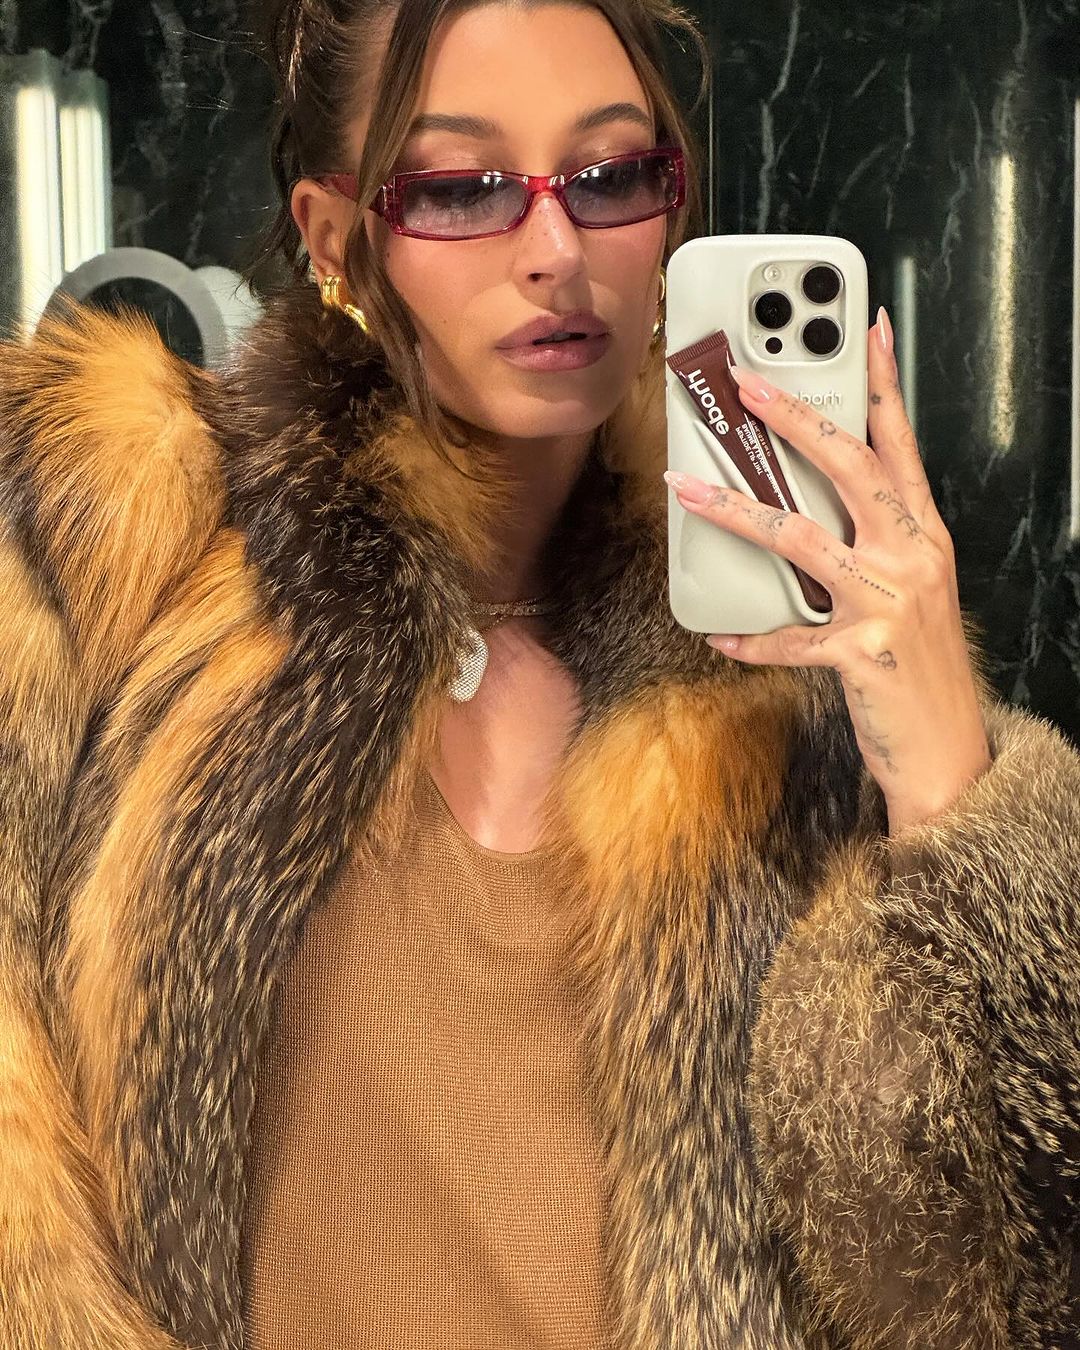 hailey bieber si fotografa allo specchio con gli occhiali da sole